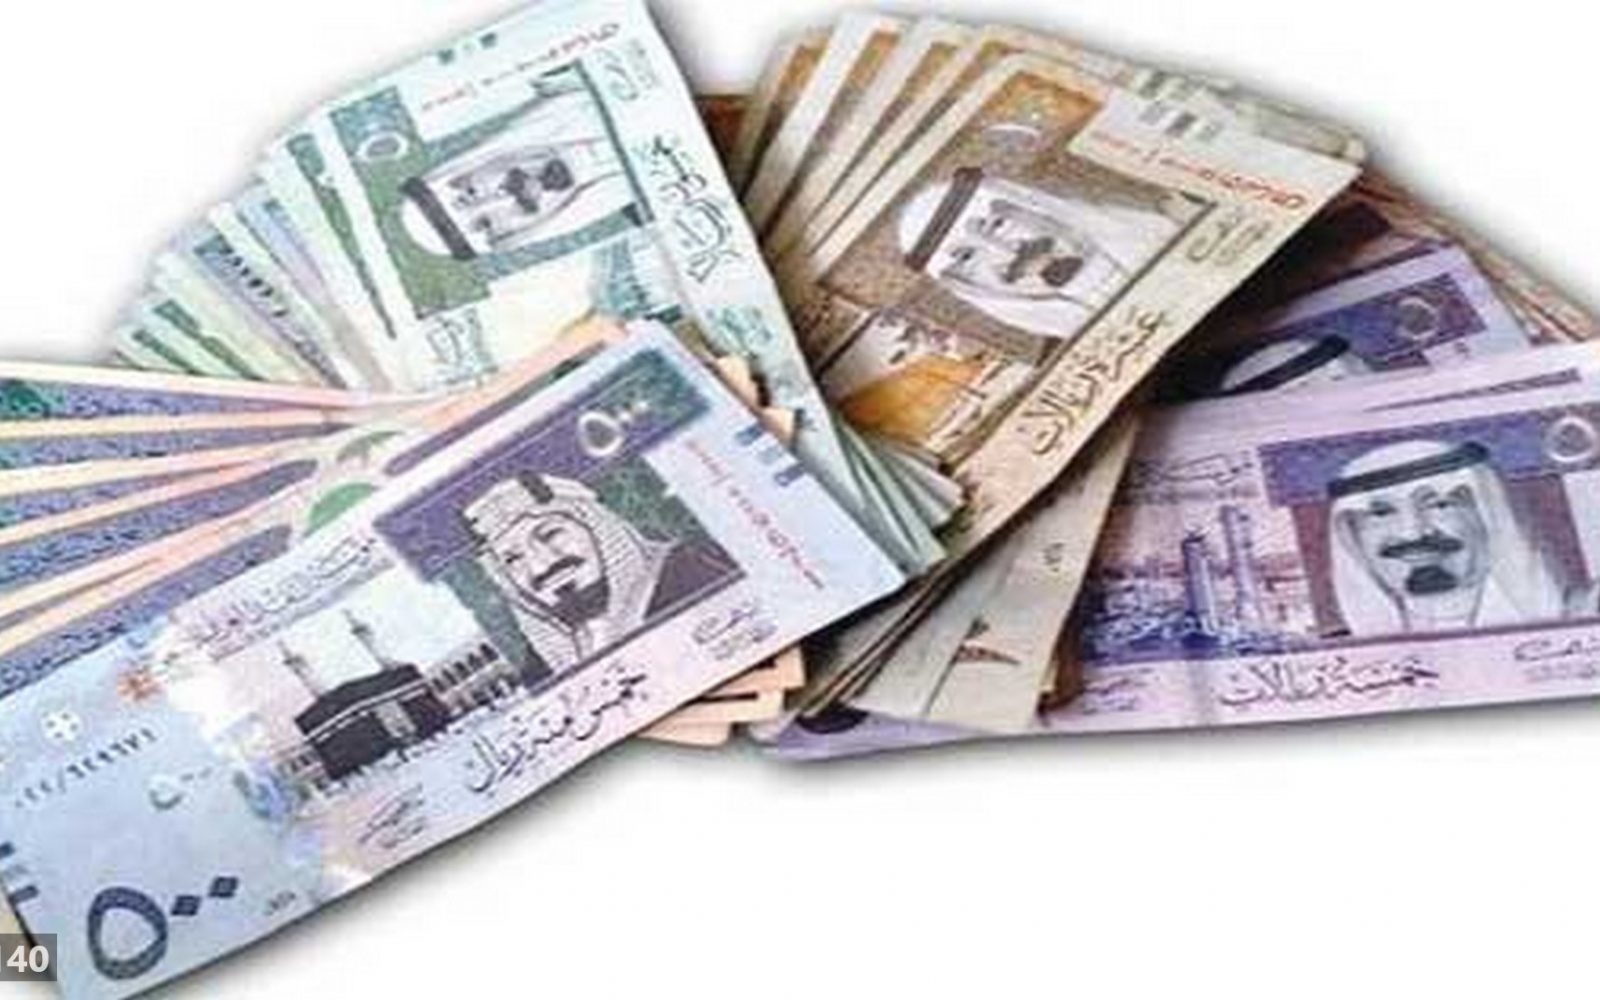 أسعار الريال السعودي في مصر الآن